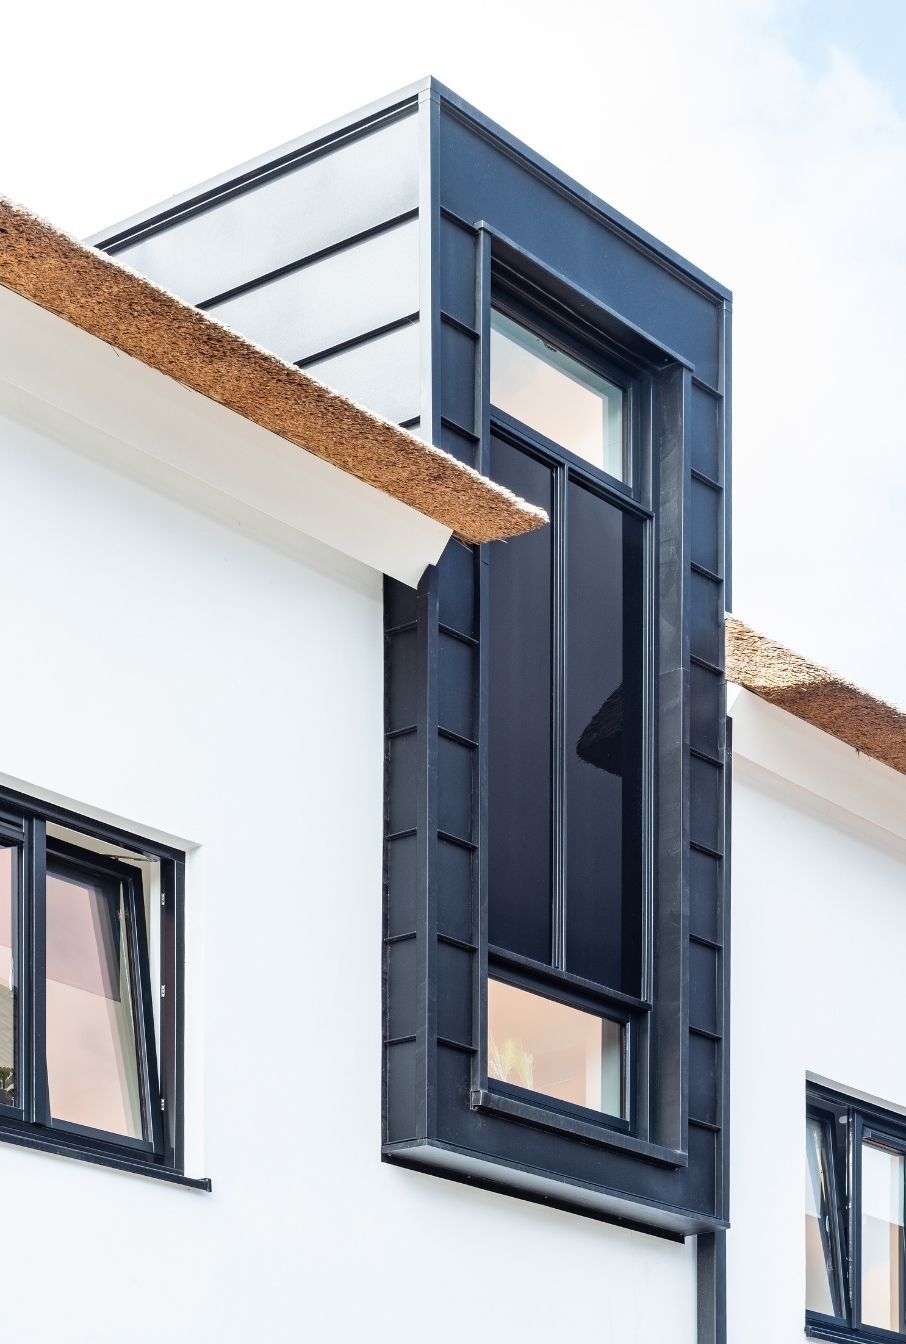 AG architecten moderne rietgedekte villa Heemskerk Detail zijkant